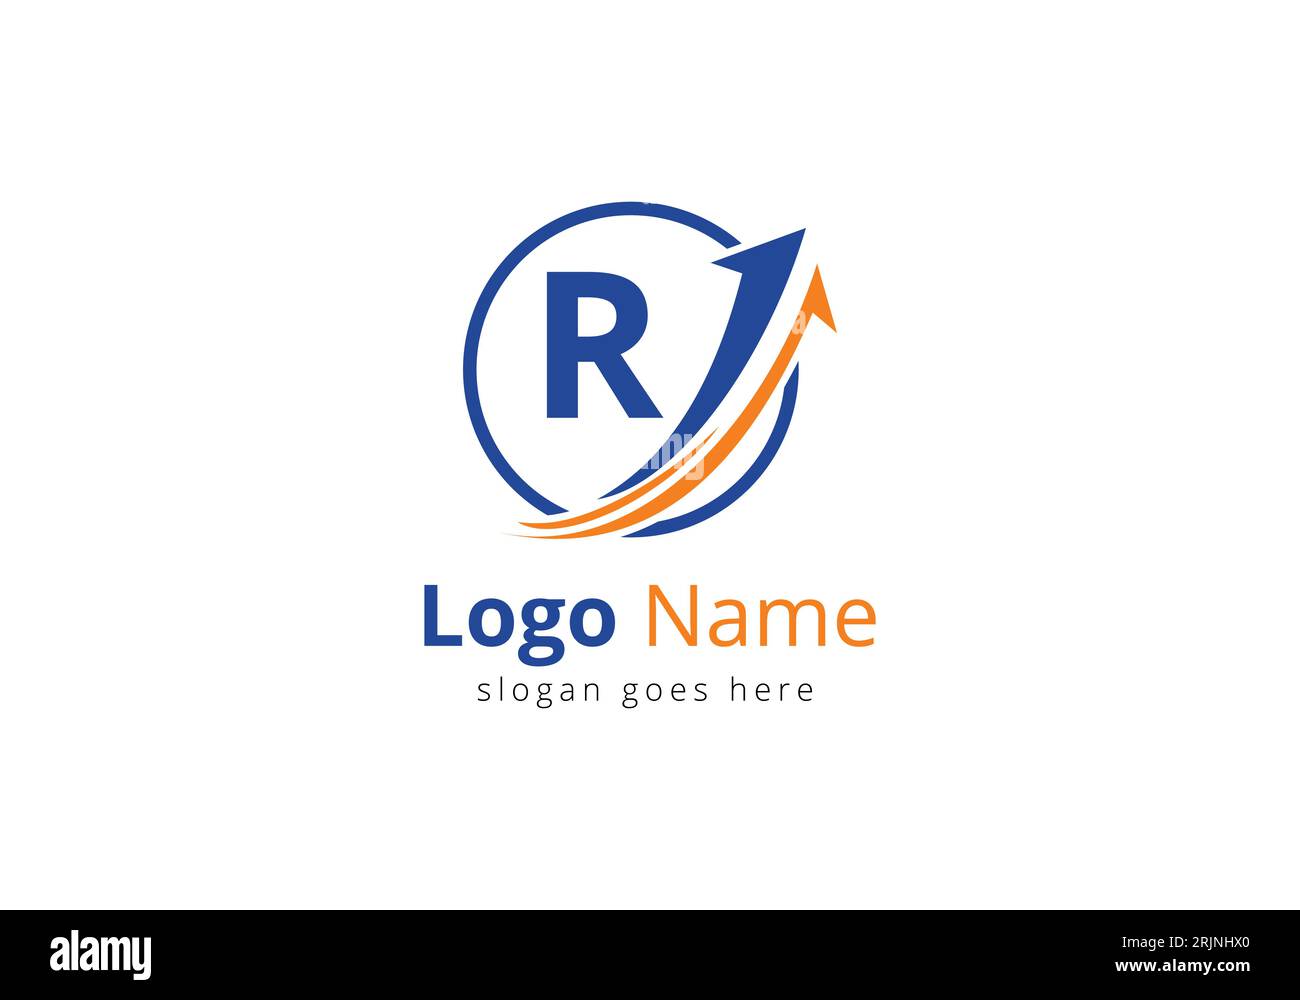 Logo de financement avec concept de lettre R. Concept de logo financier ou de réussite. Logo pour l'entreprise comptable et l'identité de l'entreprise Illustration de Vecteur